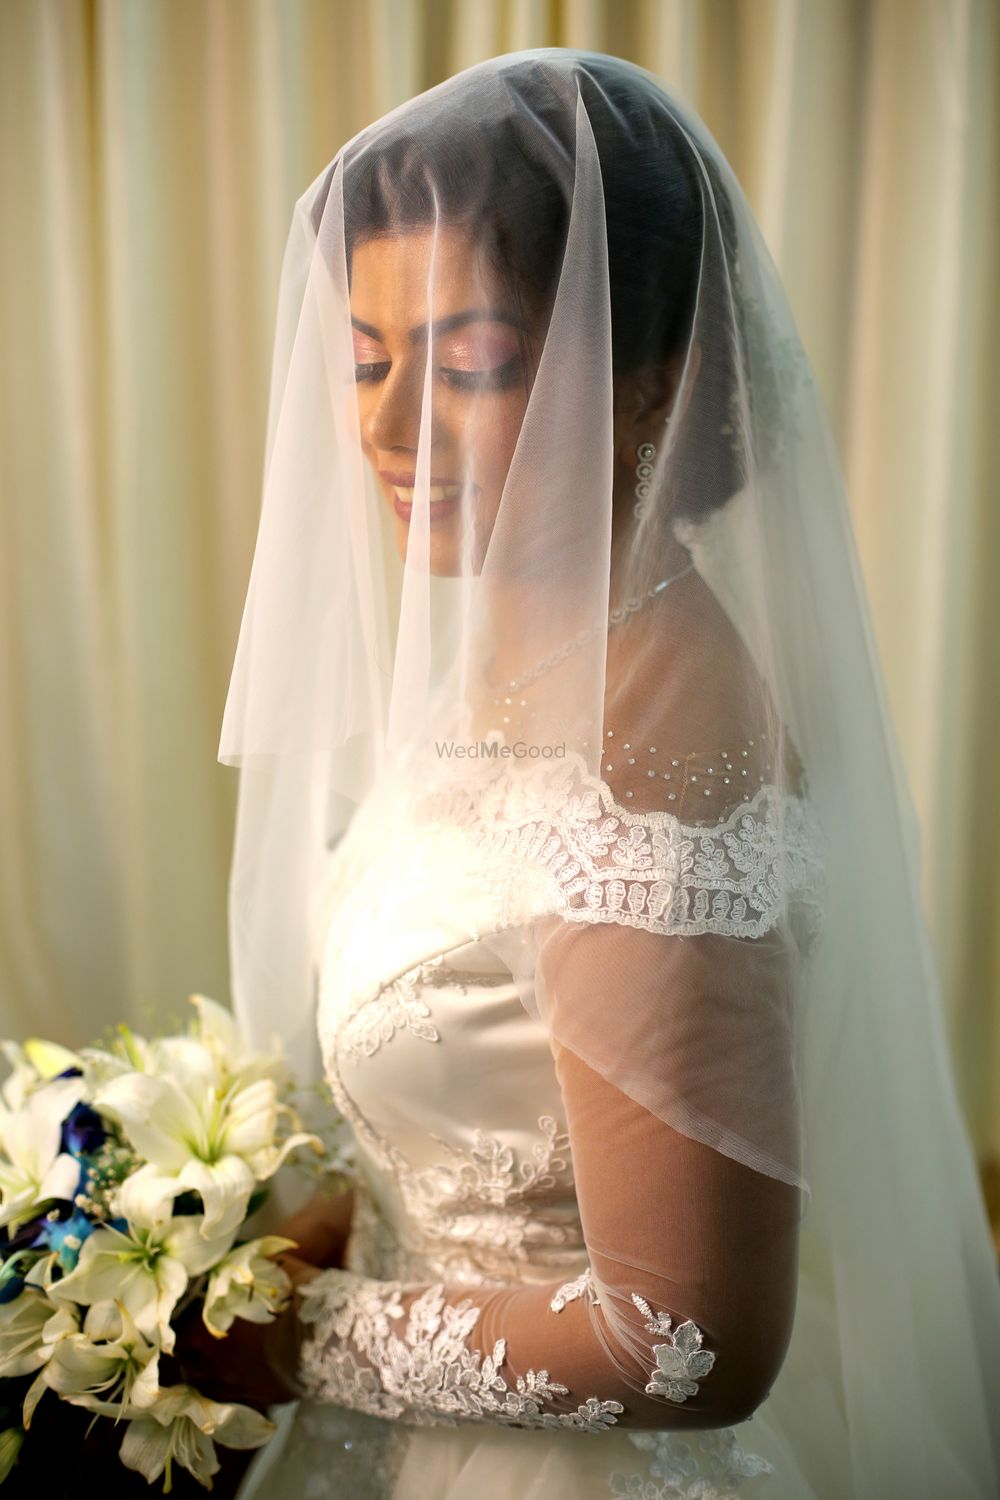 Photo From Catholic Brides - By Yashika Panchal